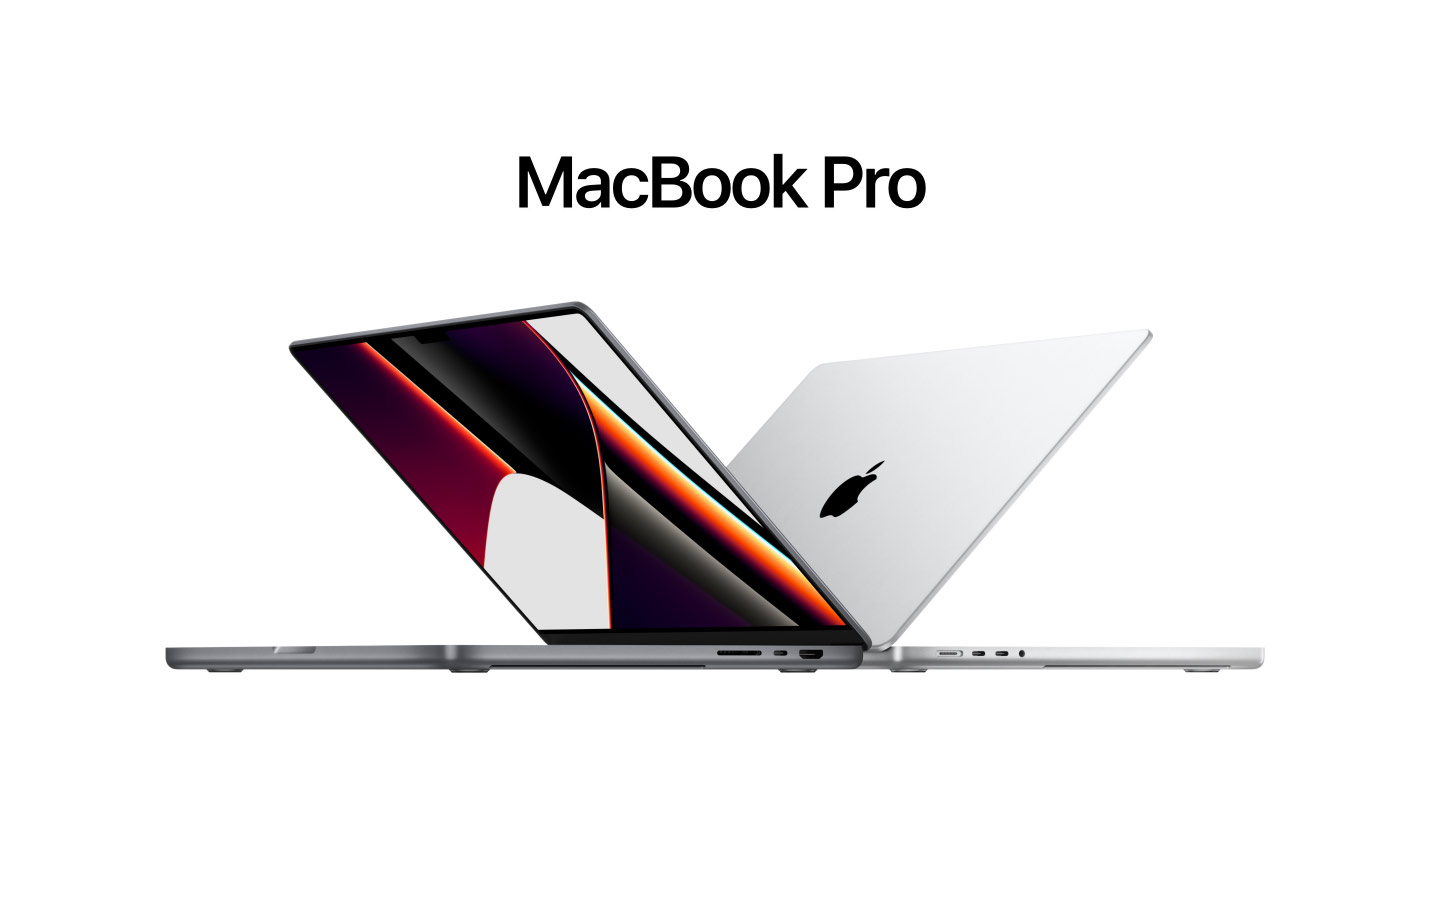 Sparen Sie bis zu 500 Dollar: Apple verkauft das 14-Zoll und 16-Zoll MacBook Pro mit einem starken Rabatt auf Amazon